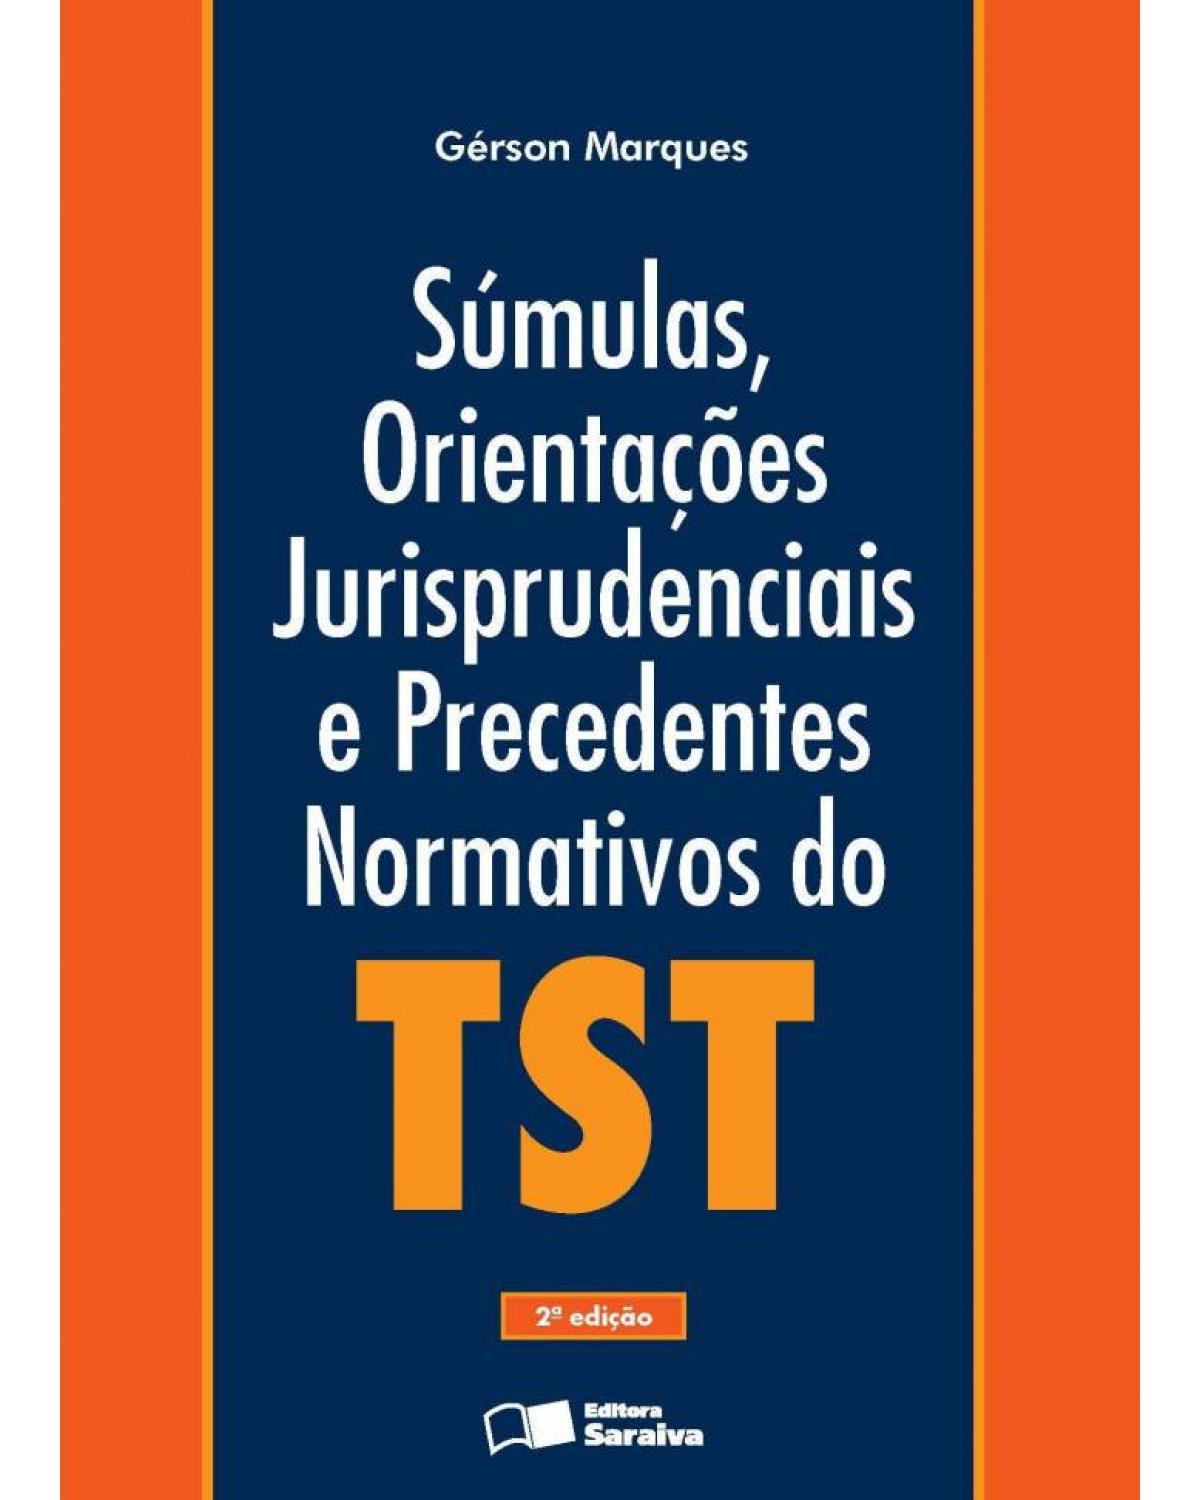 Súmulas, orientações jurisprudenciais e precedentes normativos do tst - 2ª Edição | 2013